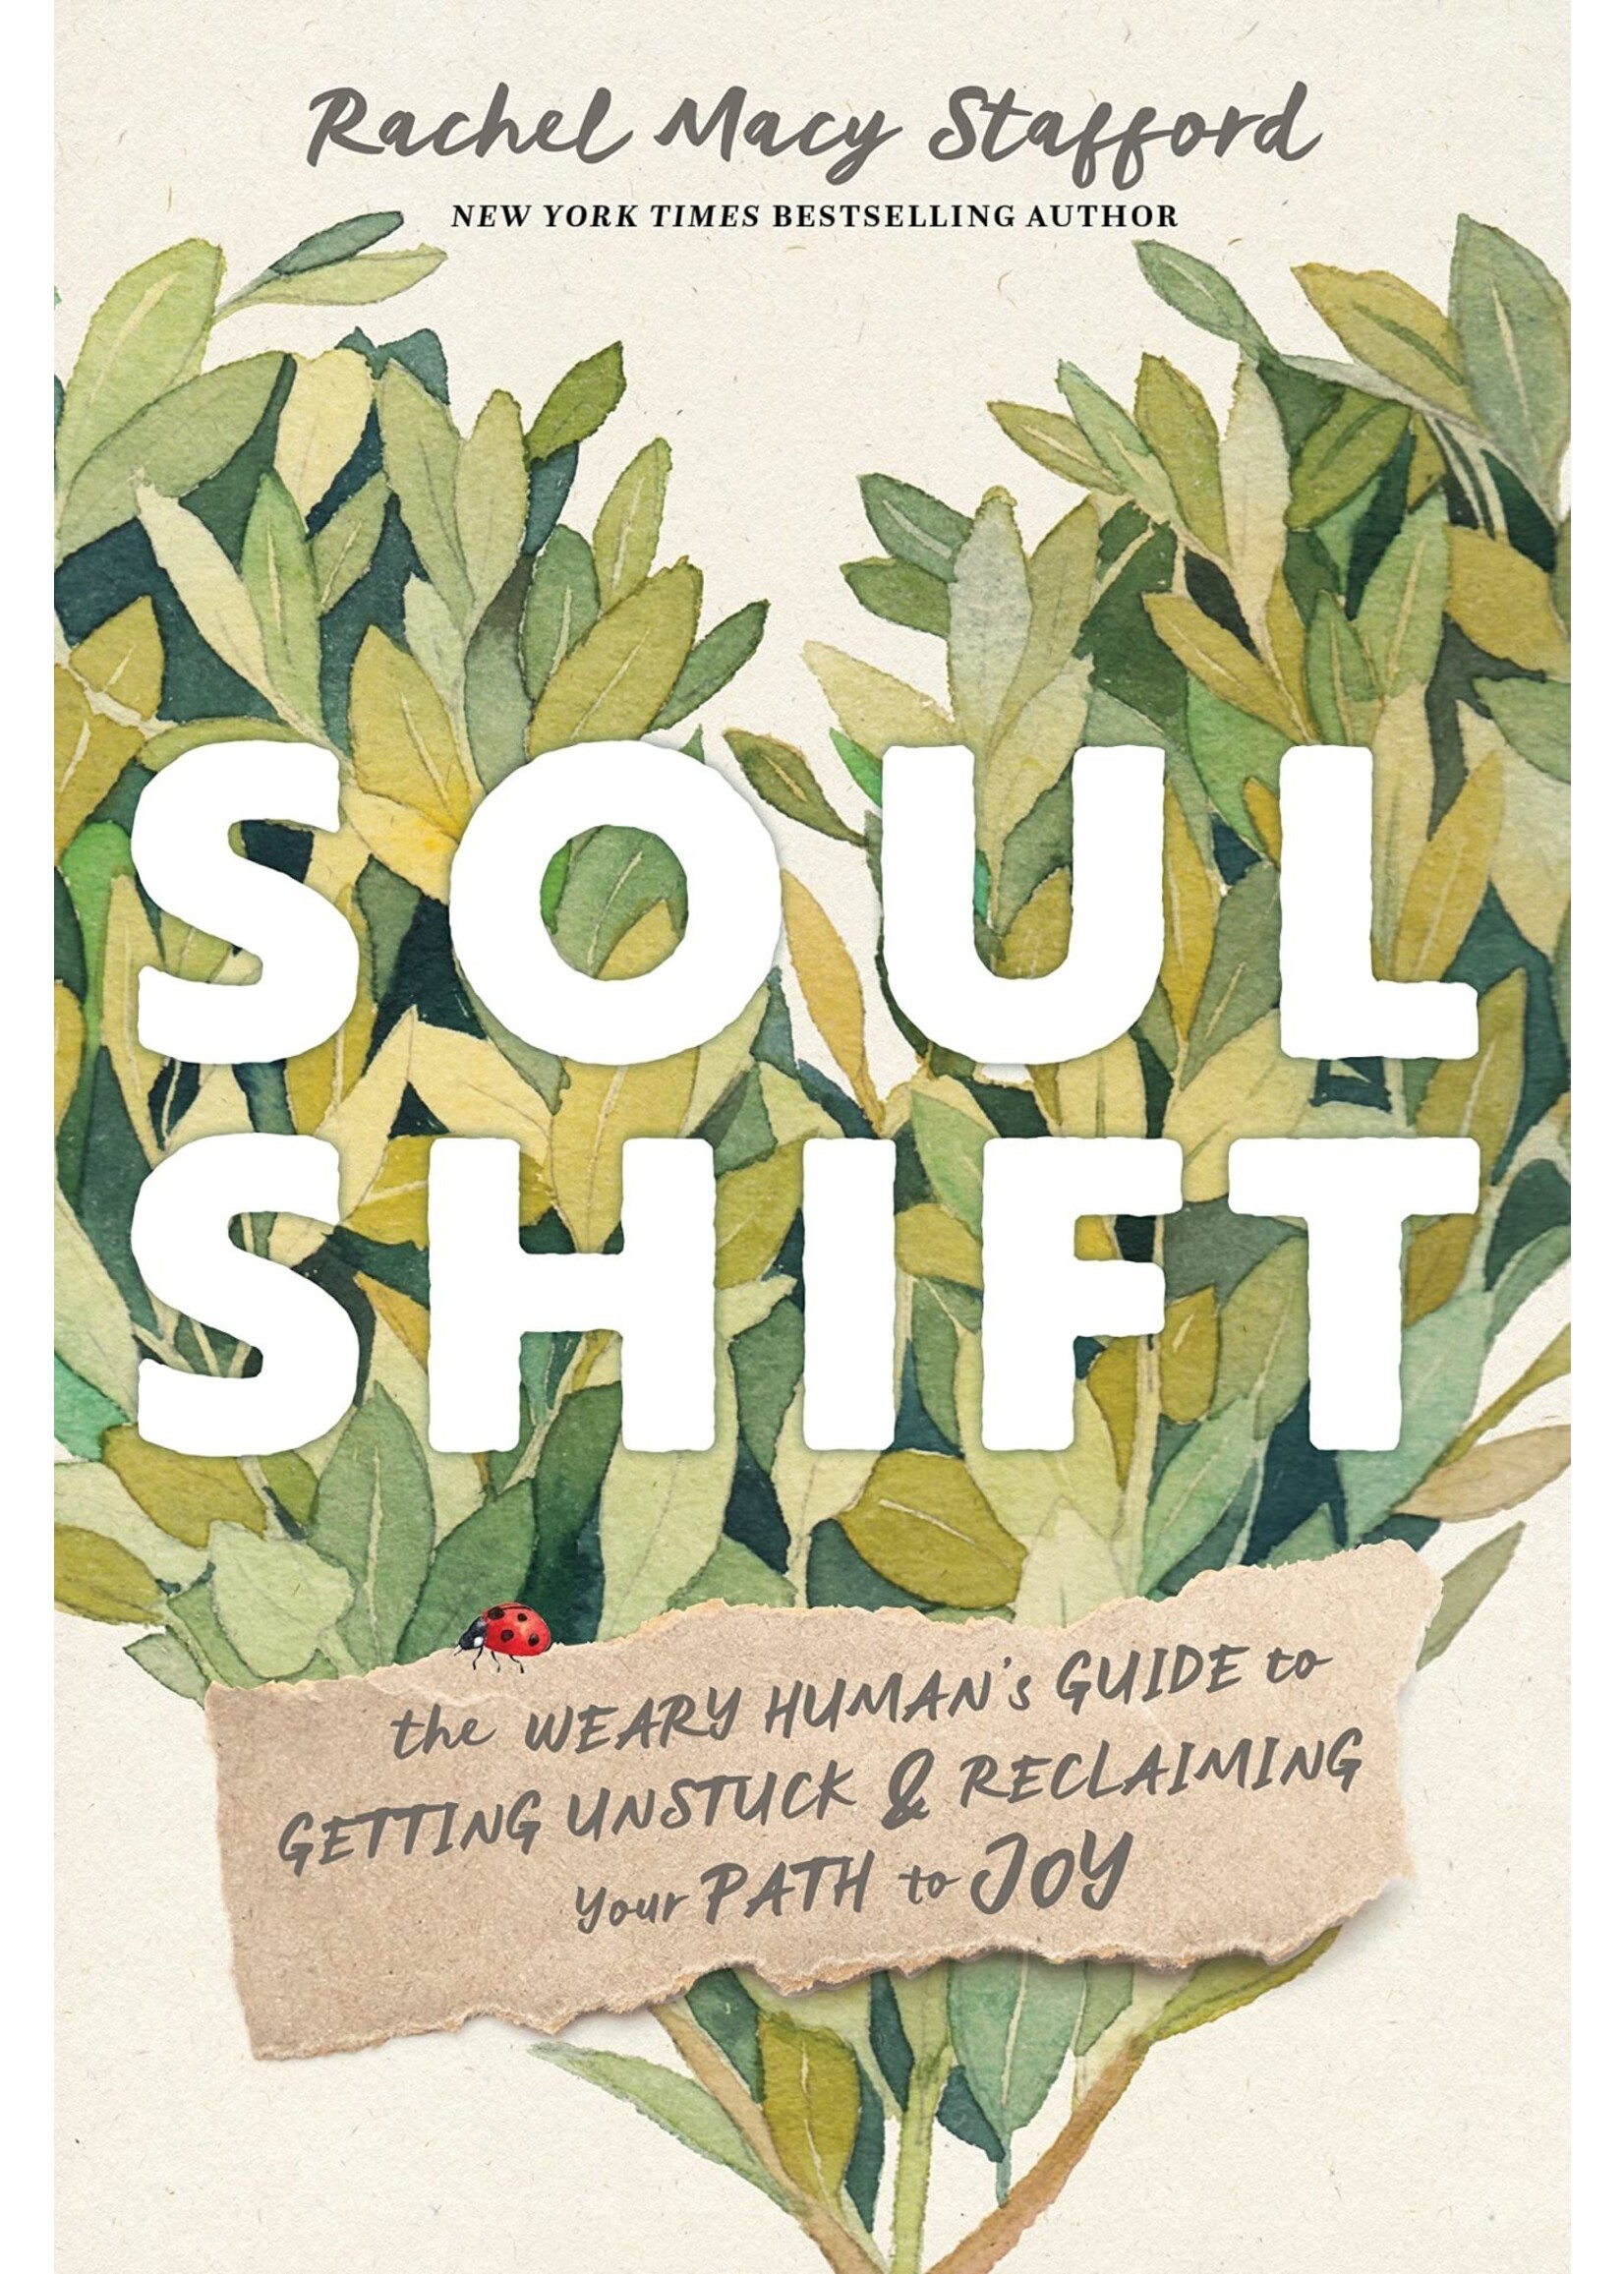 Soul Shift